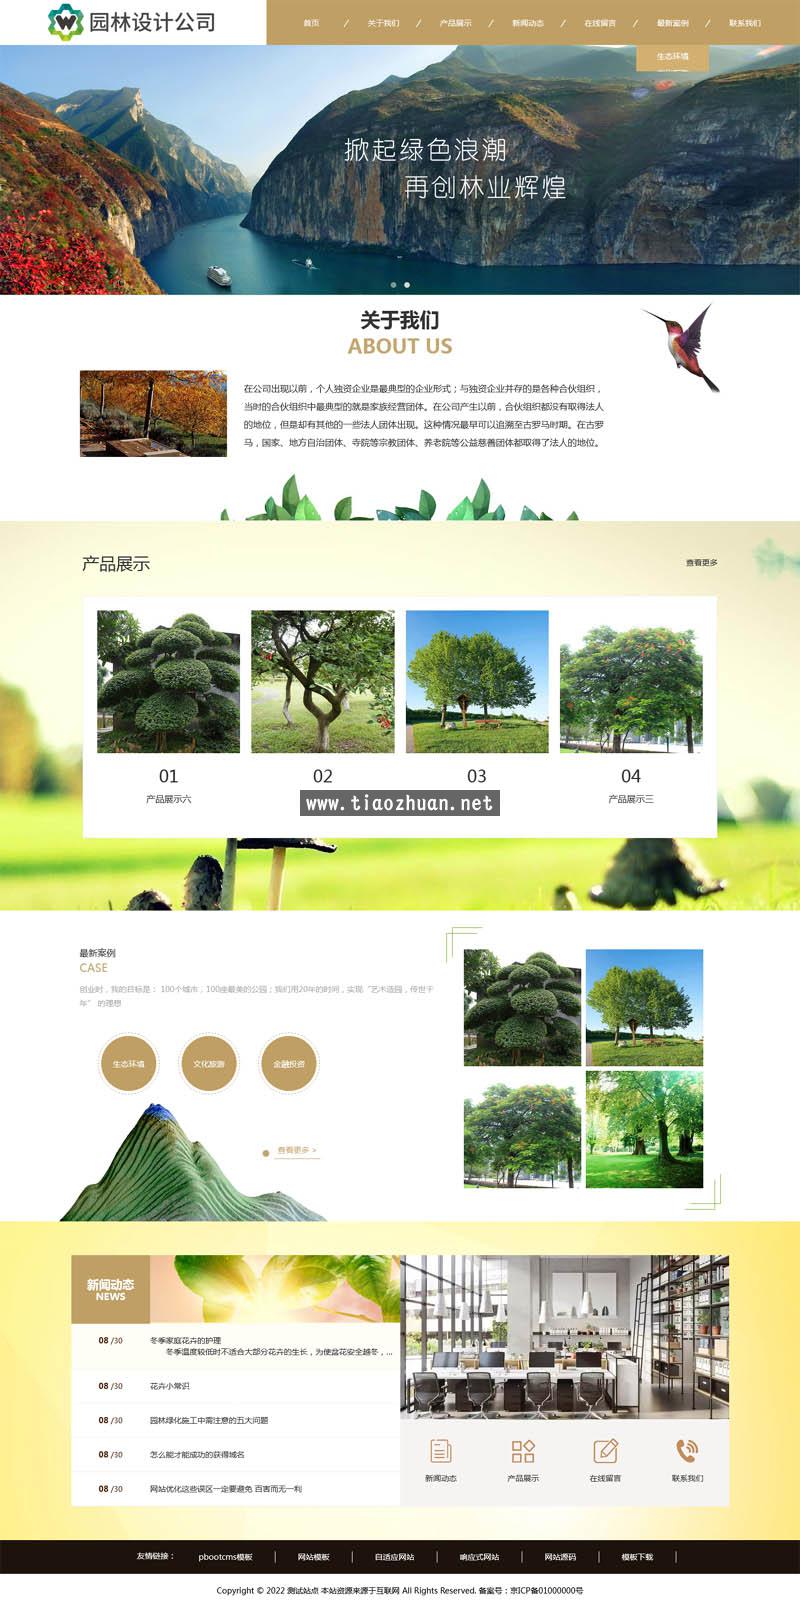 园林景观设计公司类网站pbootcms模板 绿化花卉农业农林网站源码下载